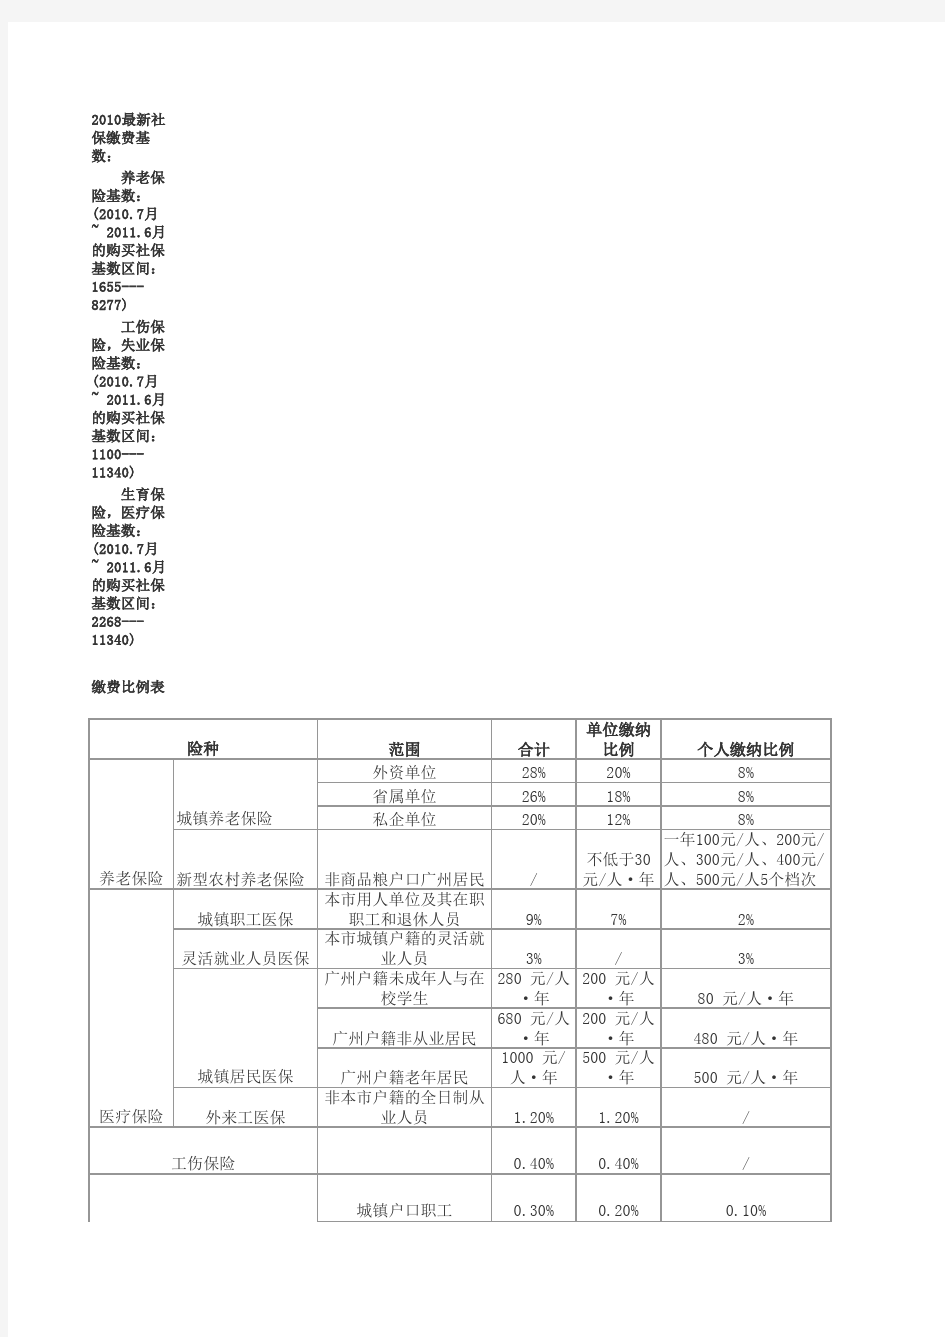 广州市社会保险缴交政策(五险一金).xls